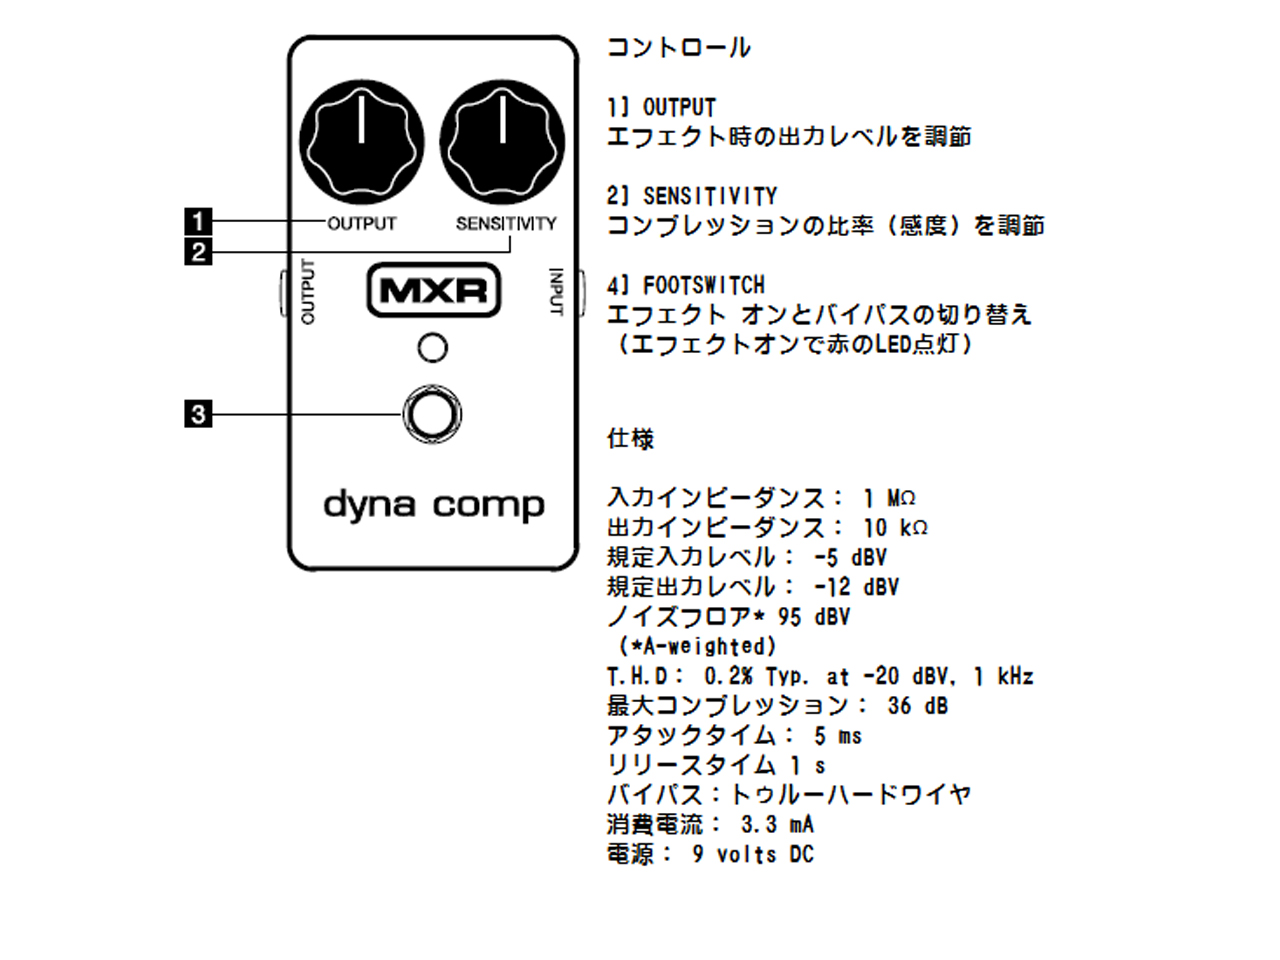 【お取寄せ商品】MXR(エムエックスアール) M102 Dyna Comp® Compressor (コンプレッサー)